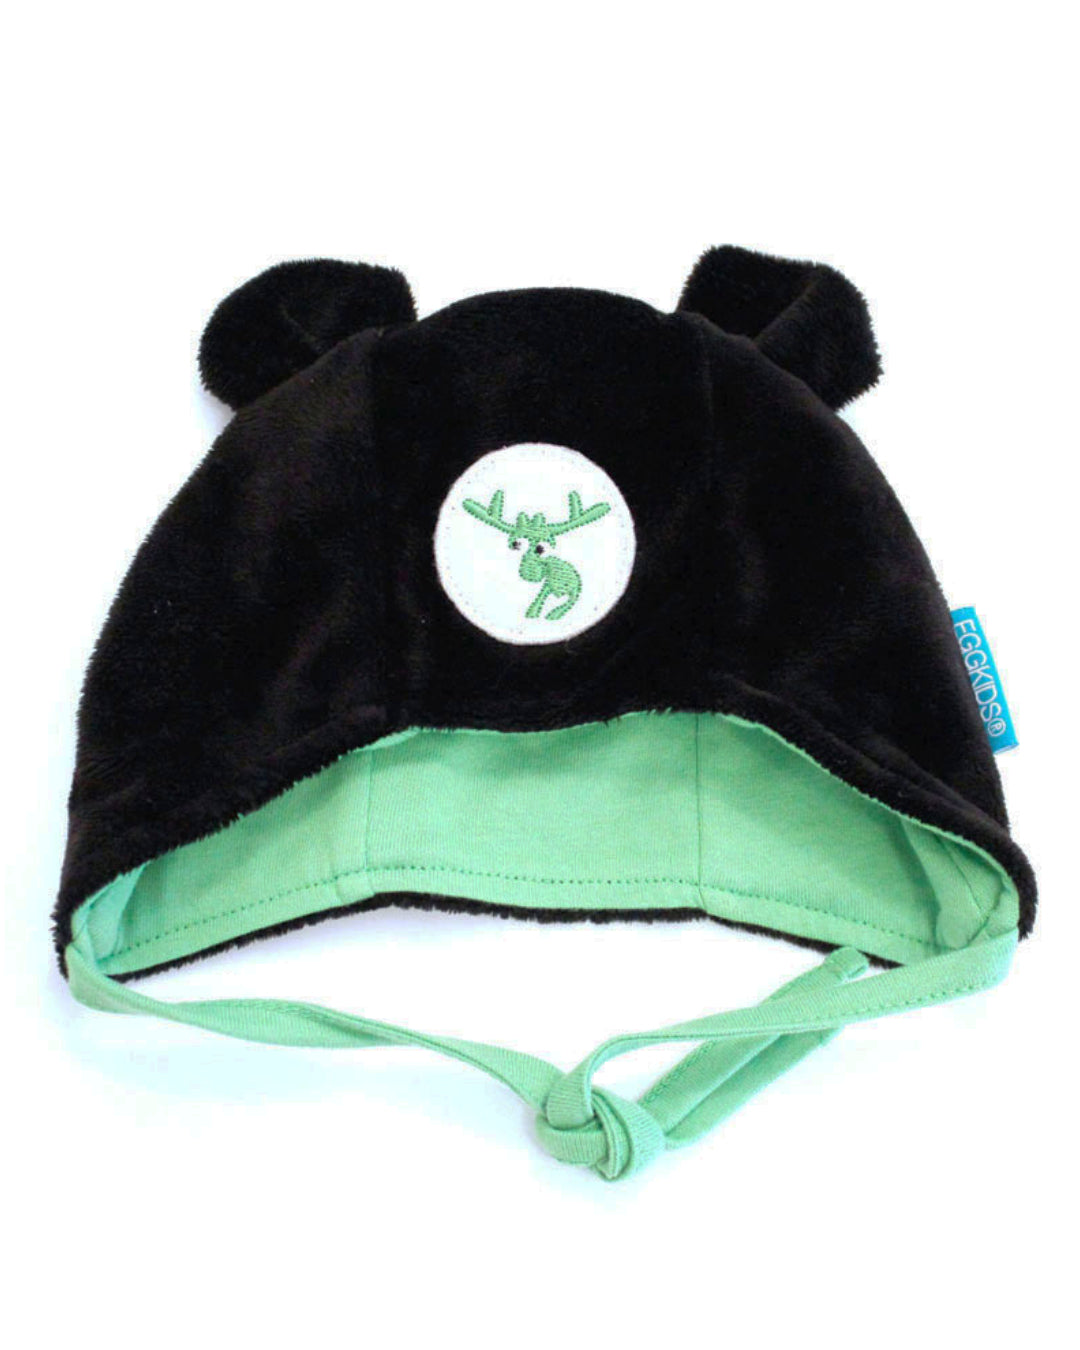 Schwarze Babymütze mit Ohren und grünem Elch Emblem